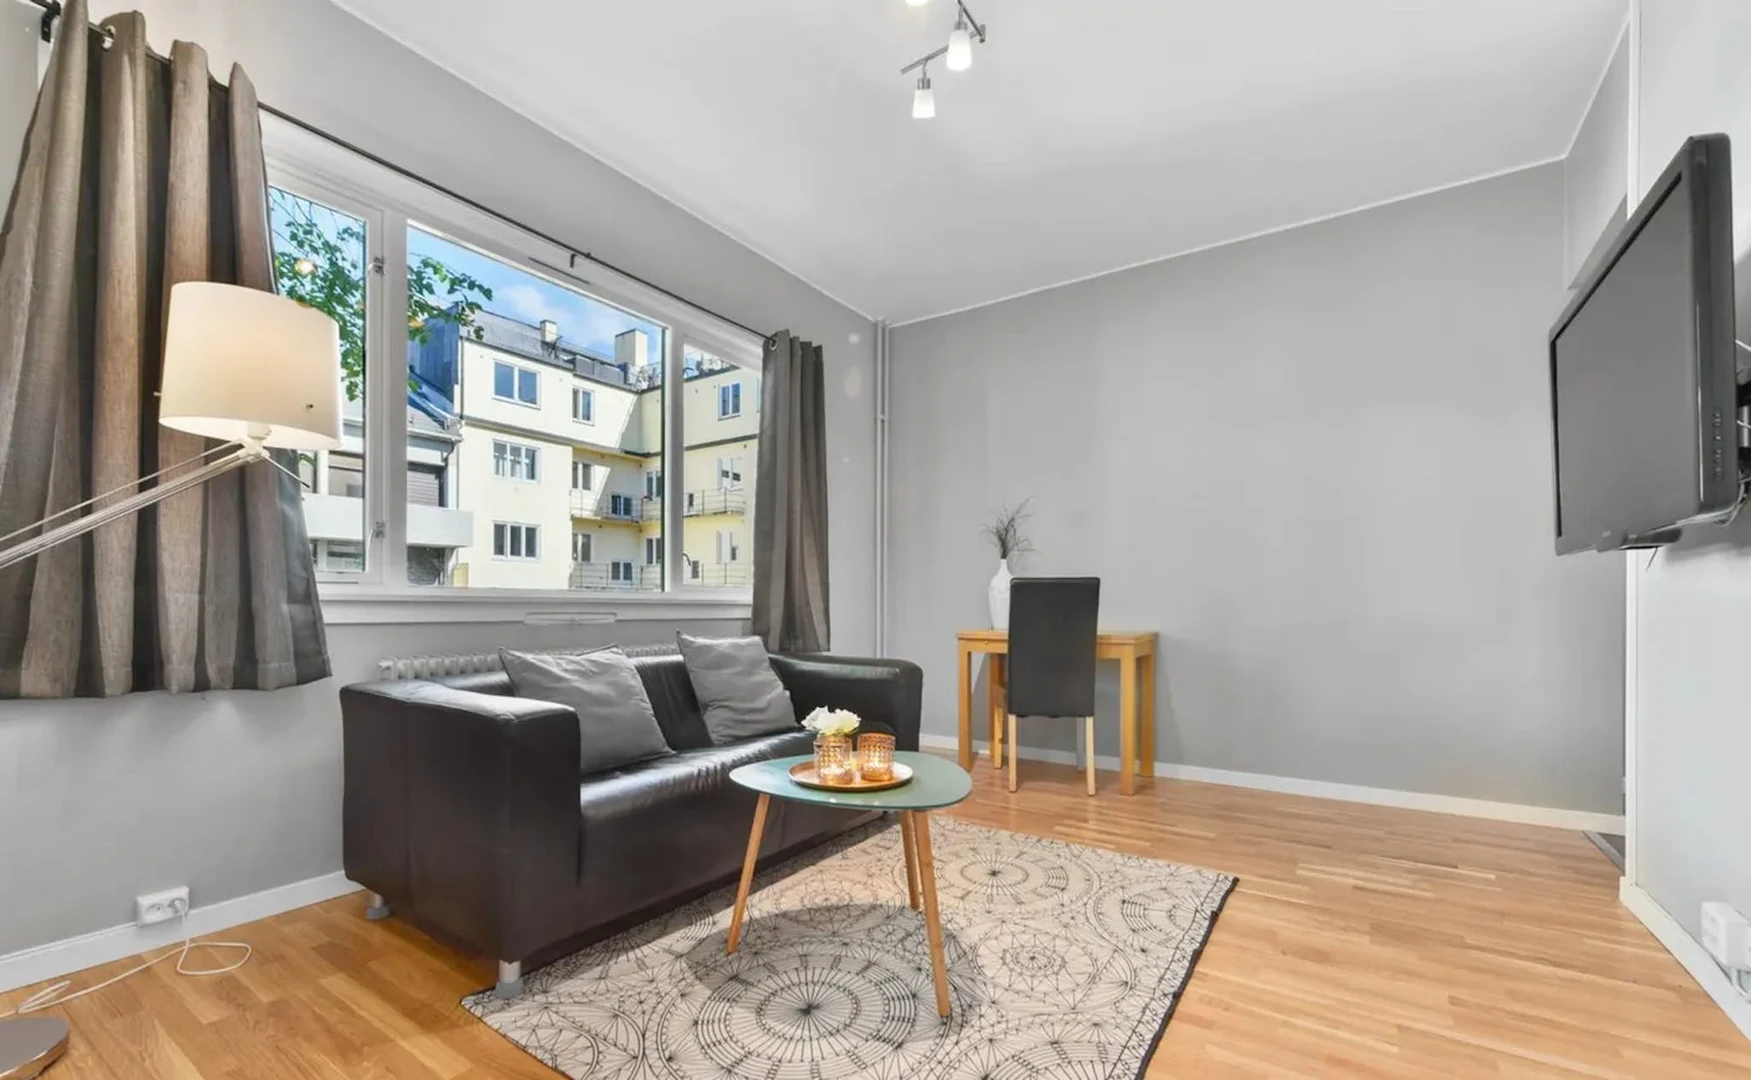 Alquiler de habitaciones por meses en Oslo